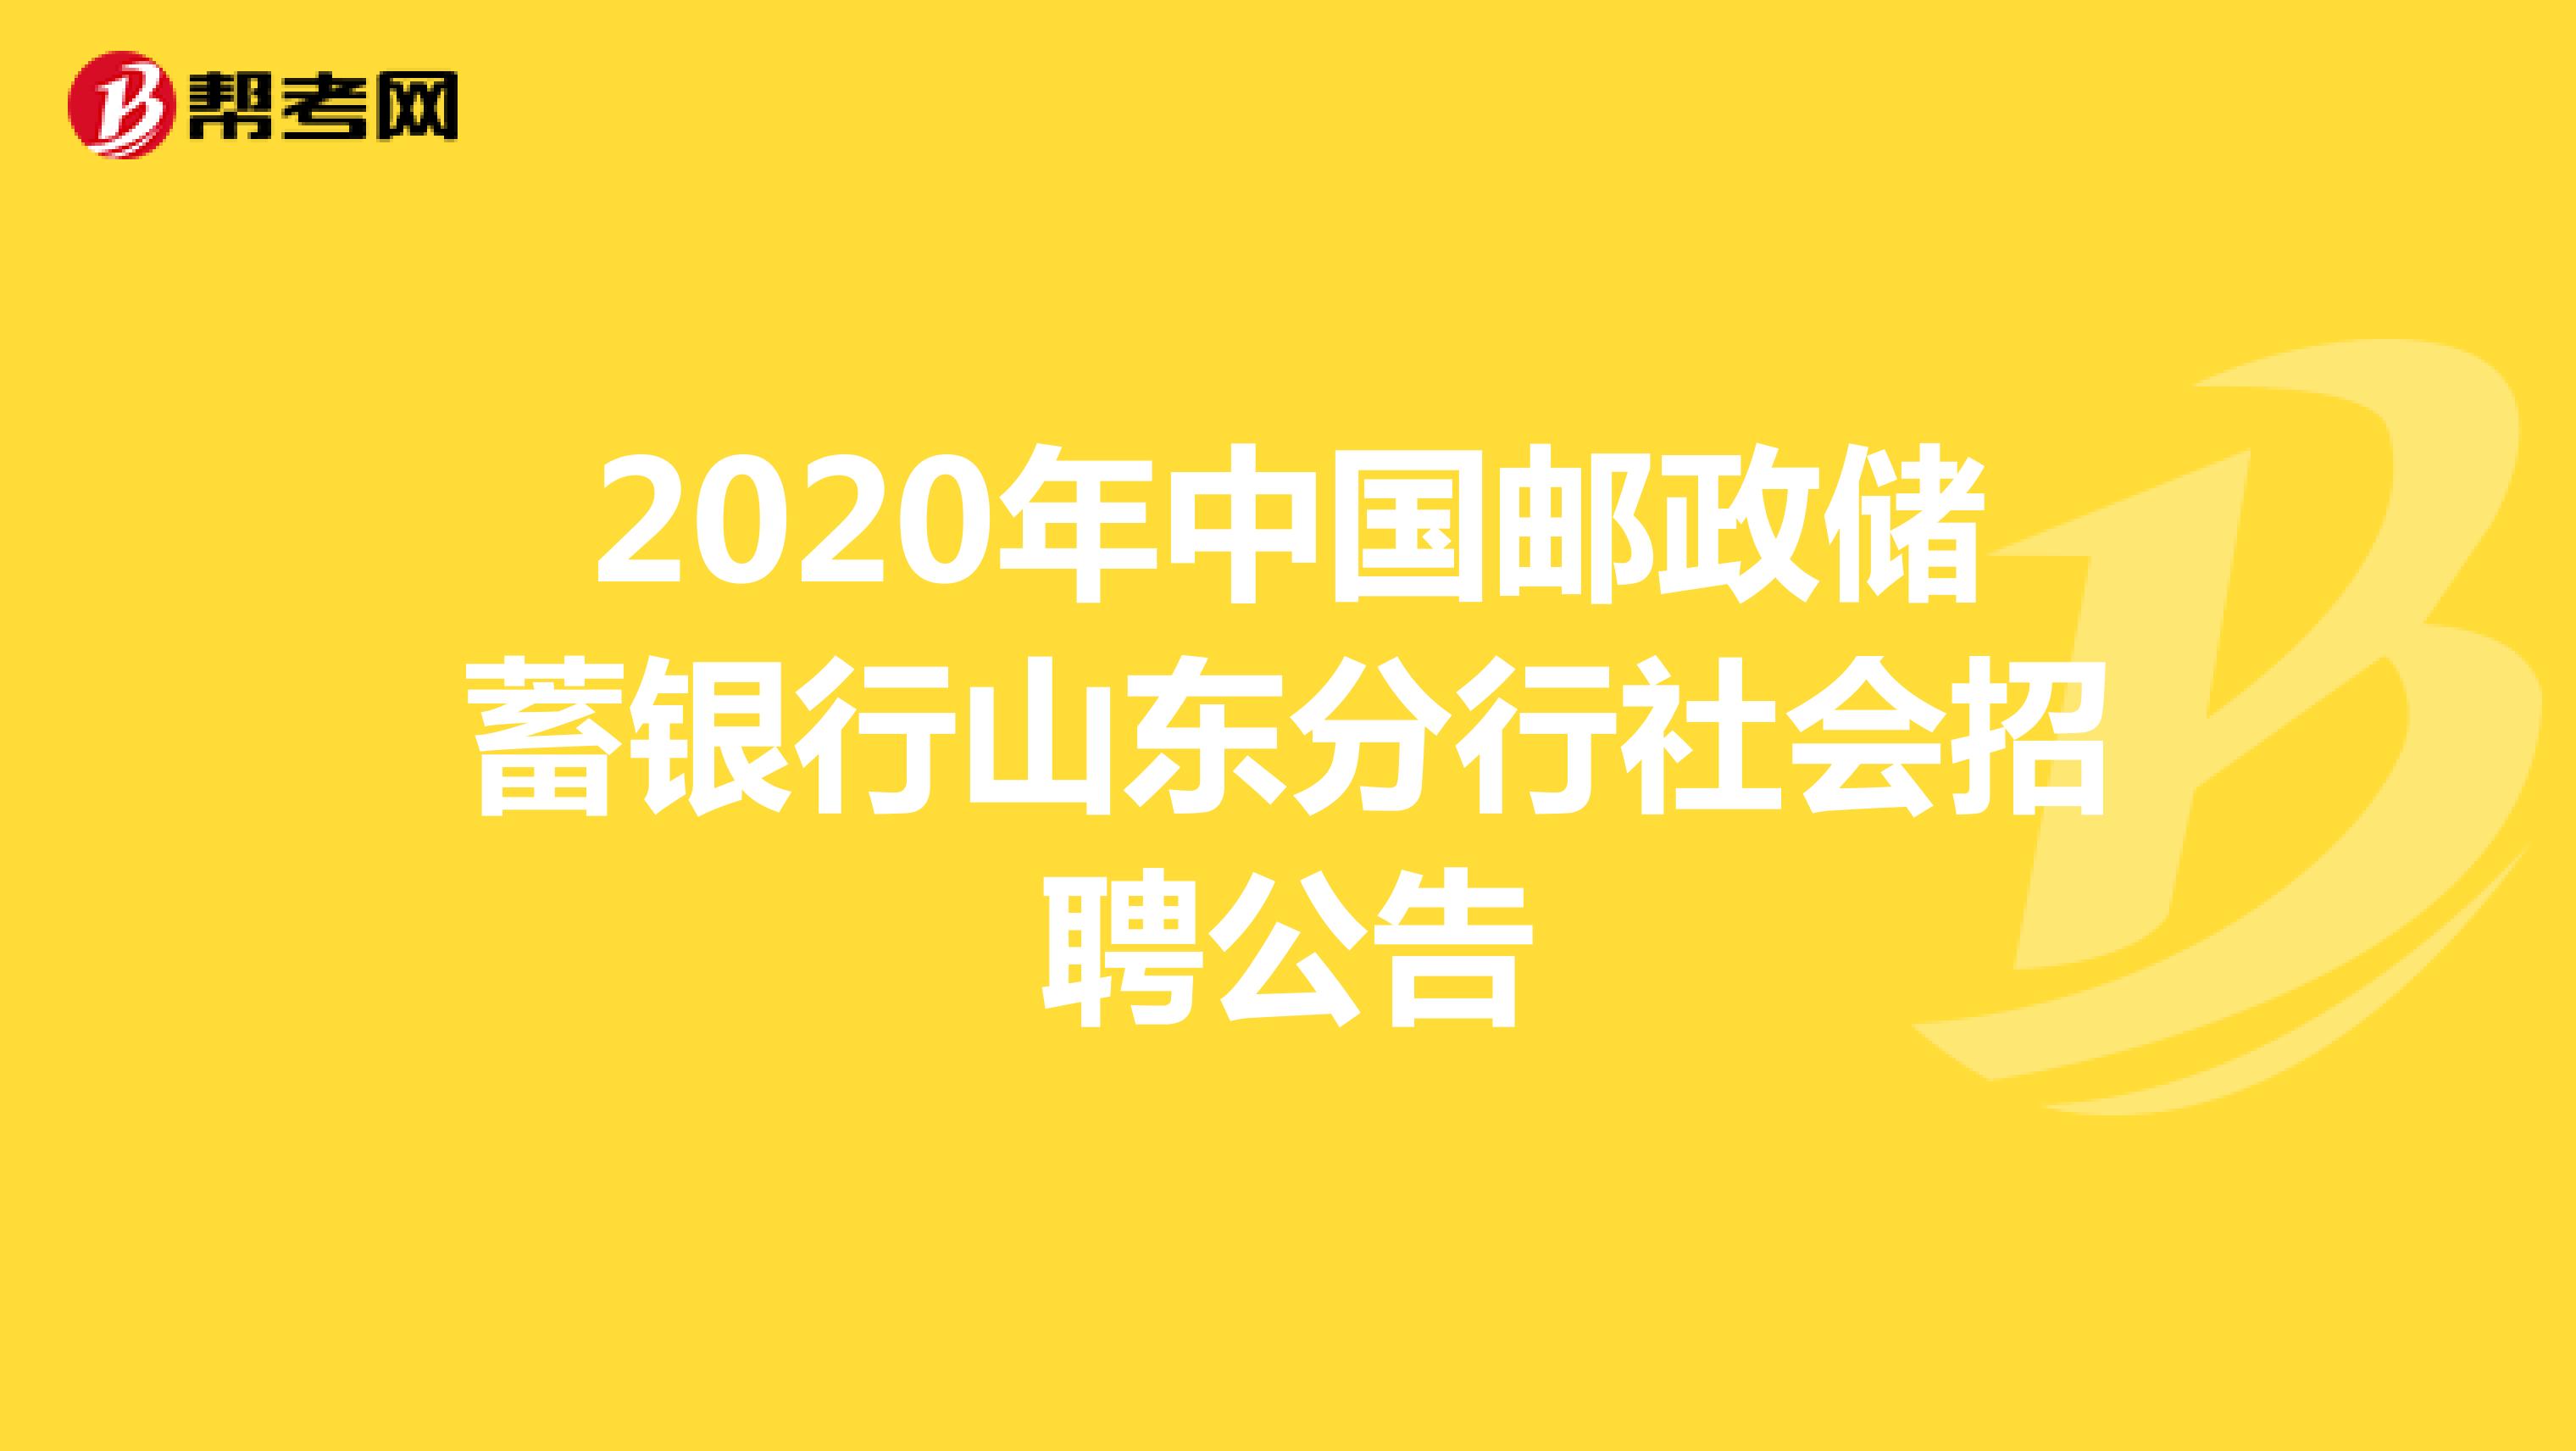 2020年中国邮政储蓄银行山东分行社会招聘公告